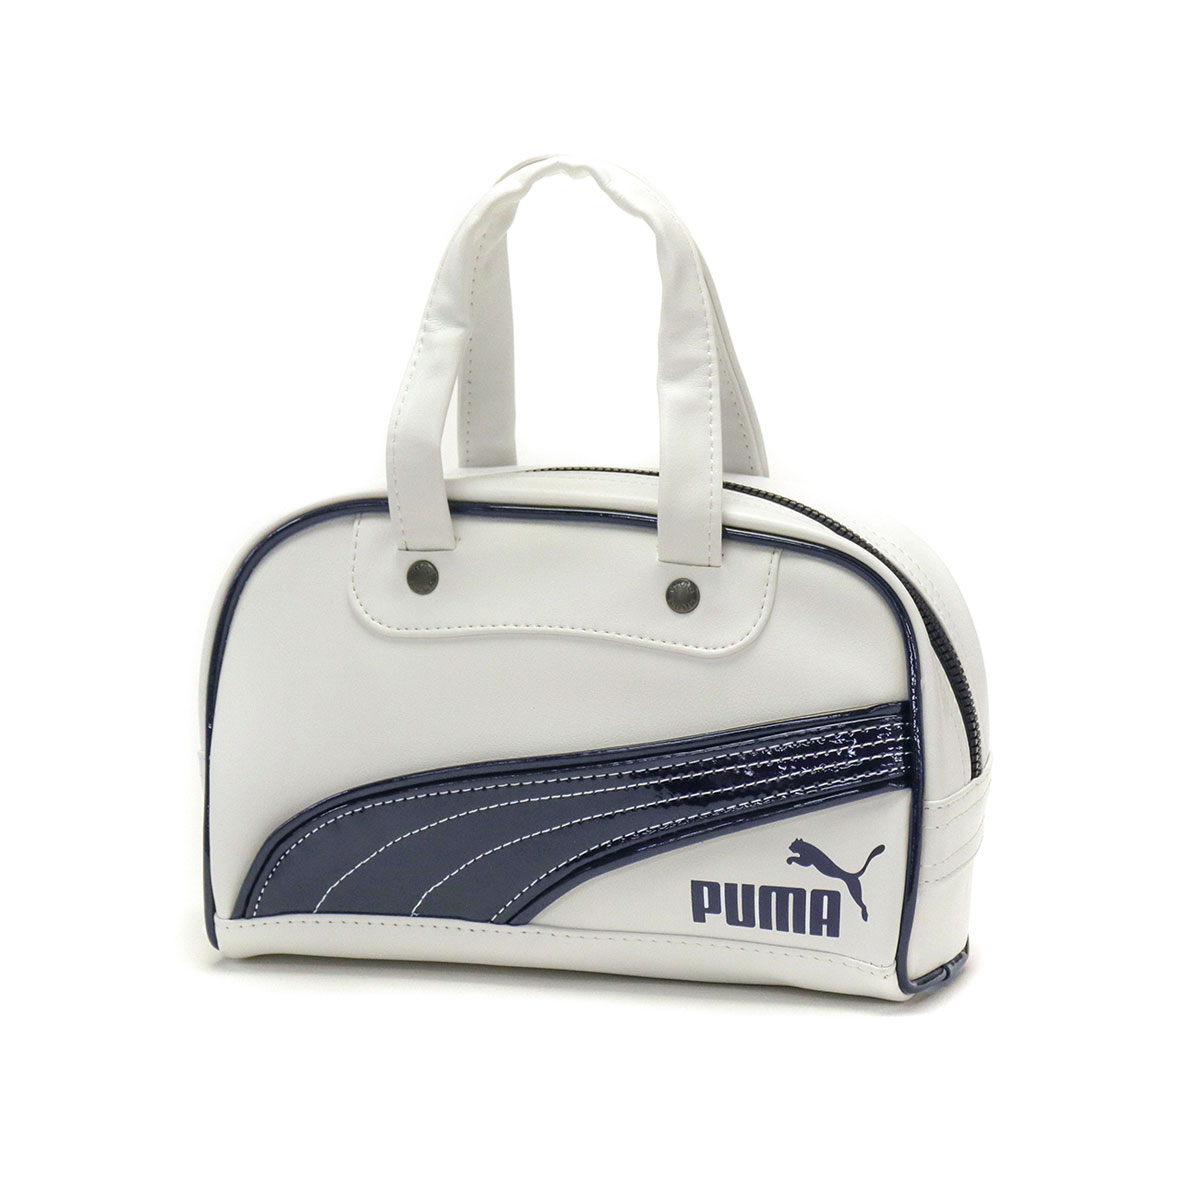 プーマ ボストンバッグ PUMA レトロ RETRO ミニグリップ バッグ 2.5L ミニボストン 軽量 小さめ コンパクト メンズ レディース  079129